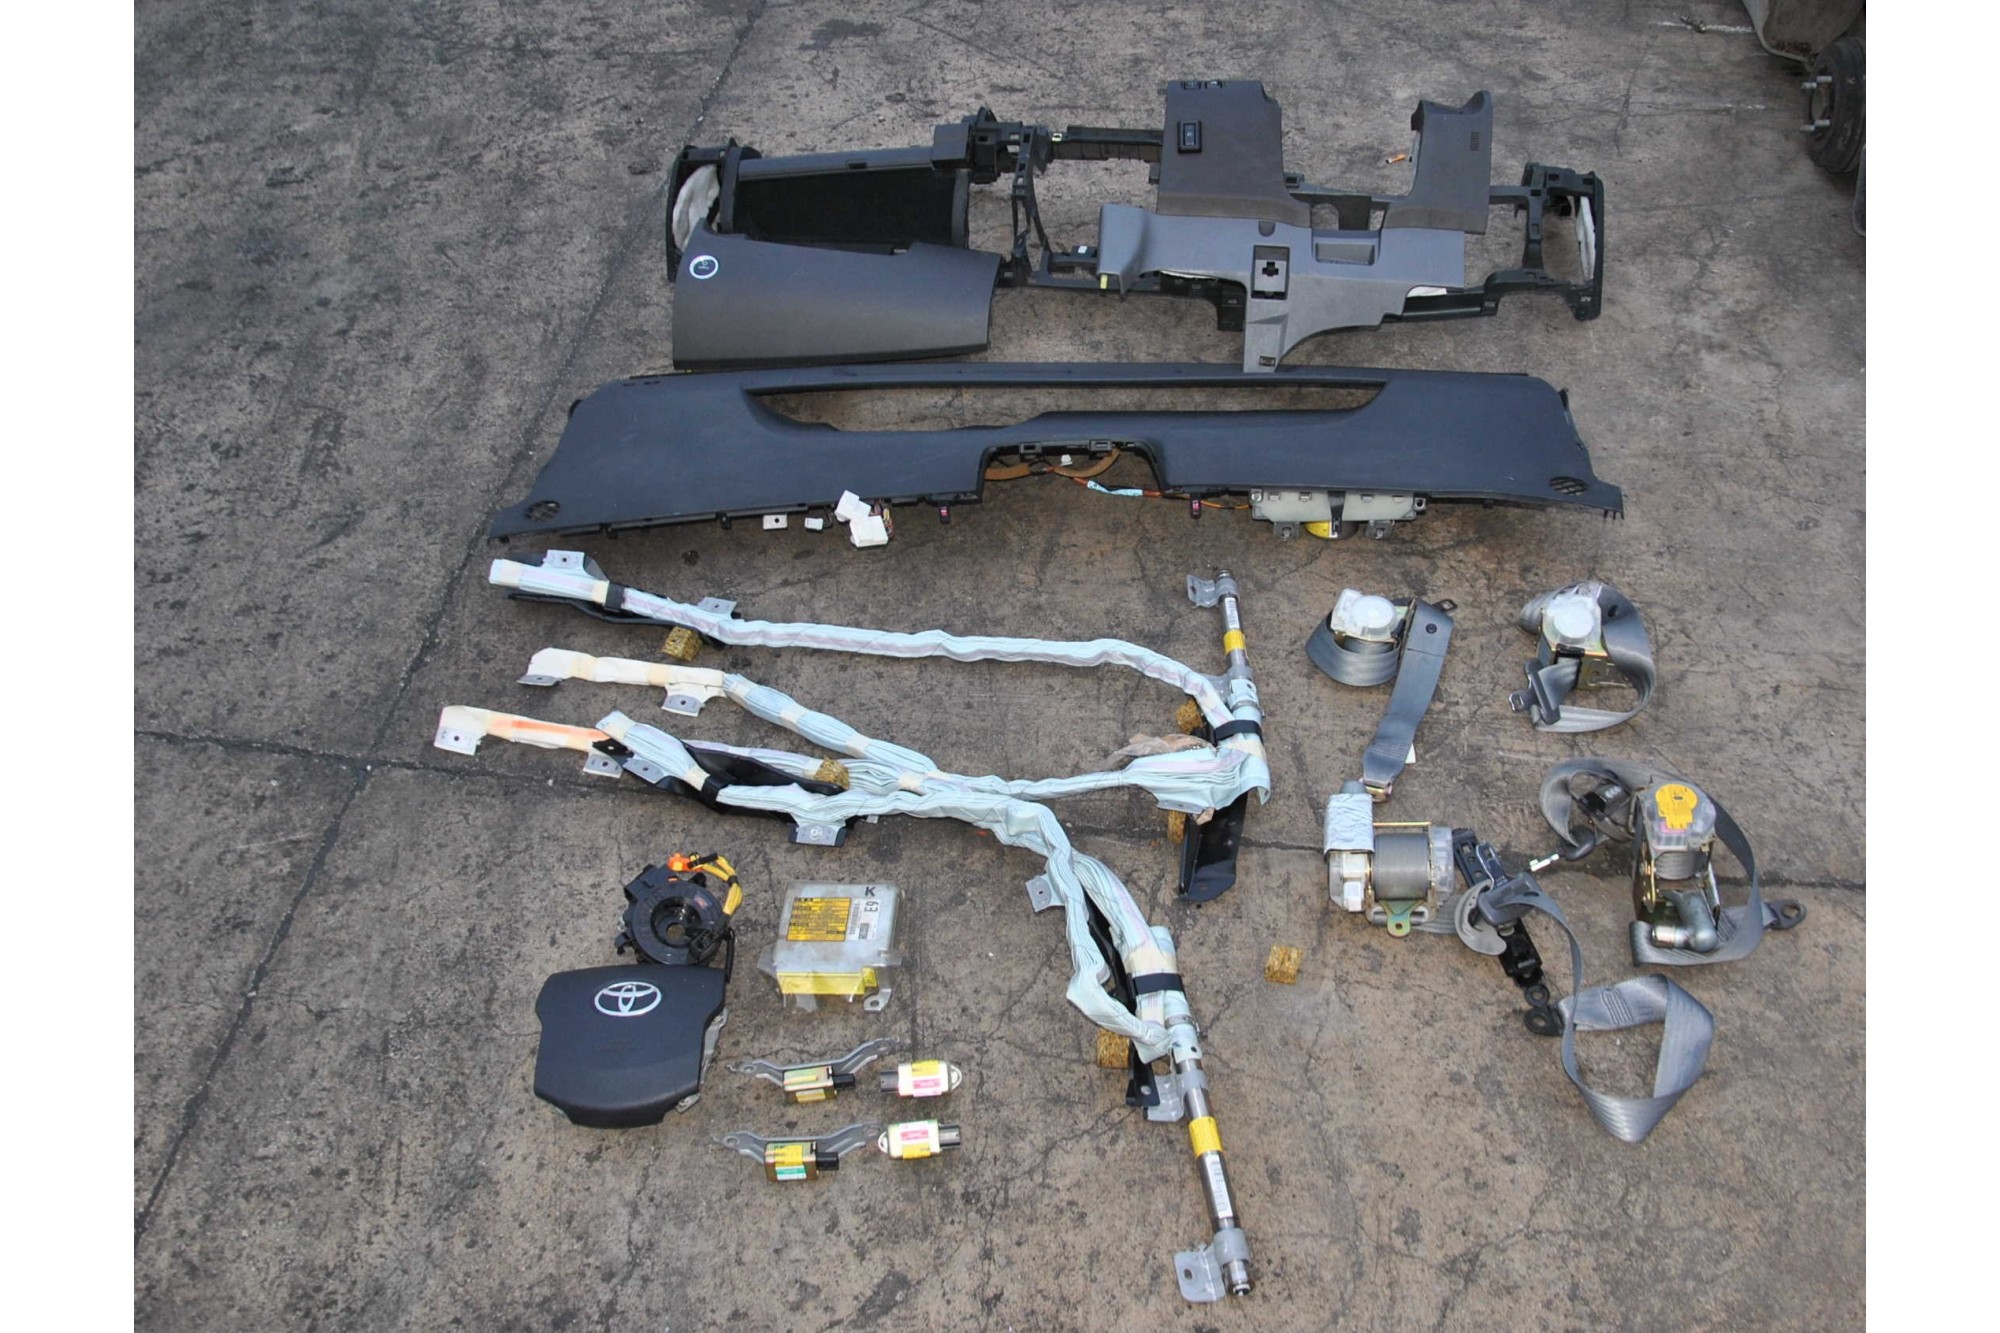 Kit airbag + sensori d' impatto Toyota Prius Dal 2003 al 2009 Cod. 89170-47390  2411111171639